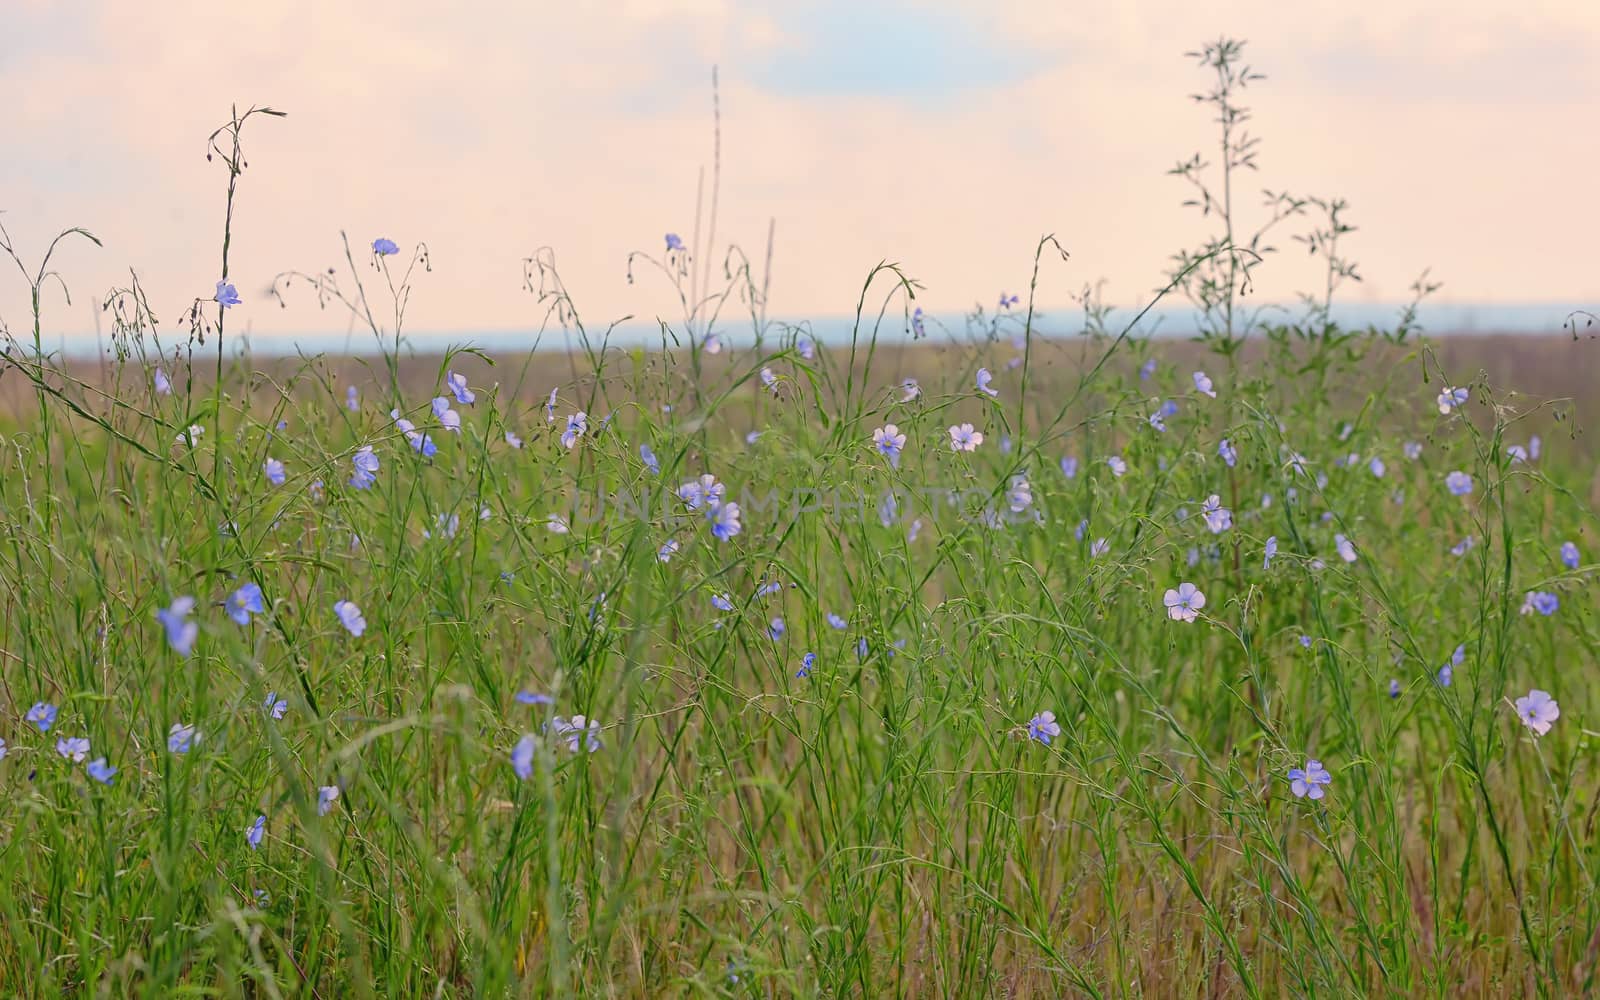 Nemophila flower field, blue flowers by jordachelr